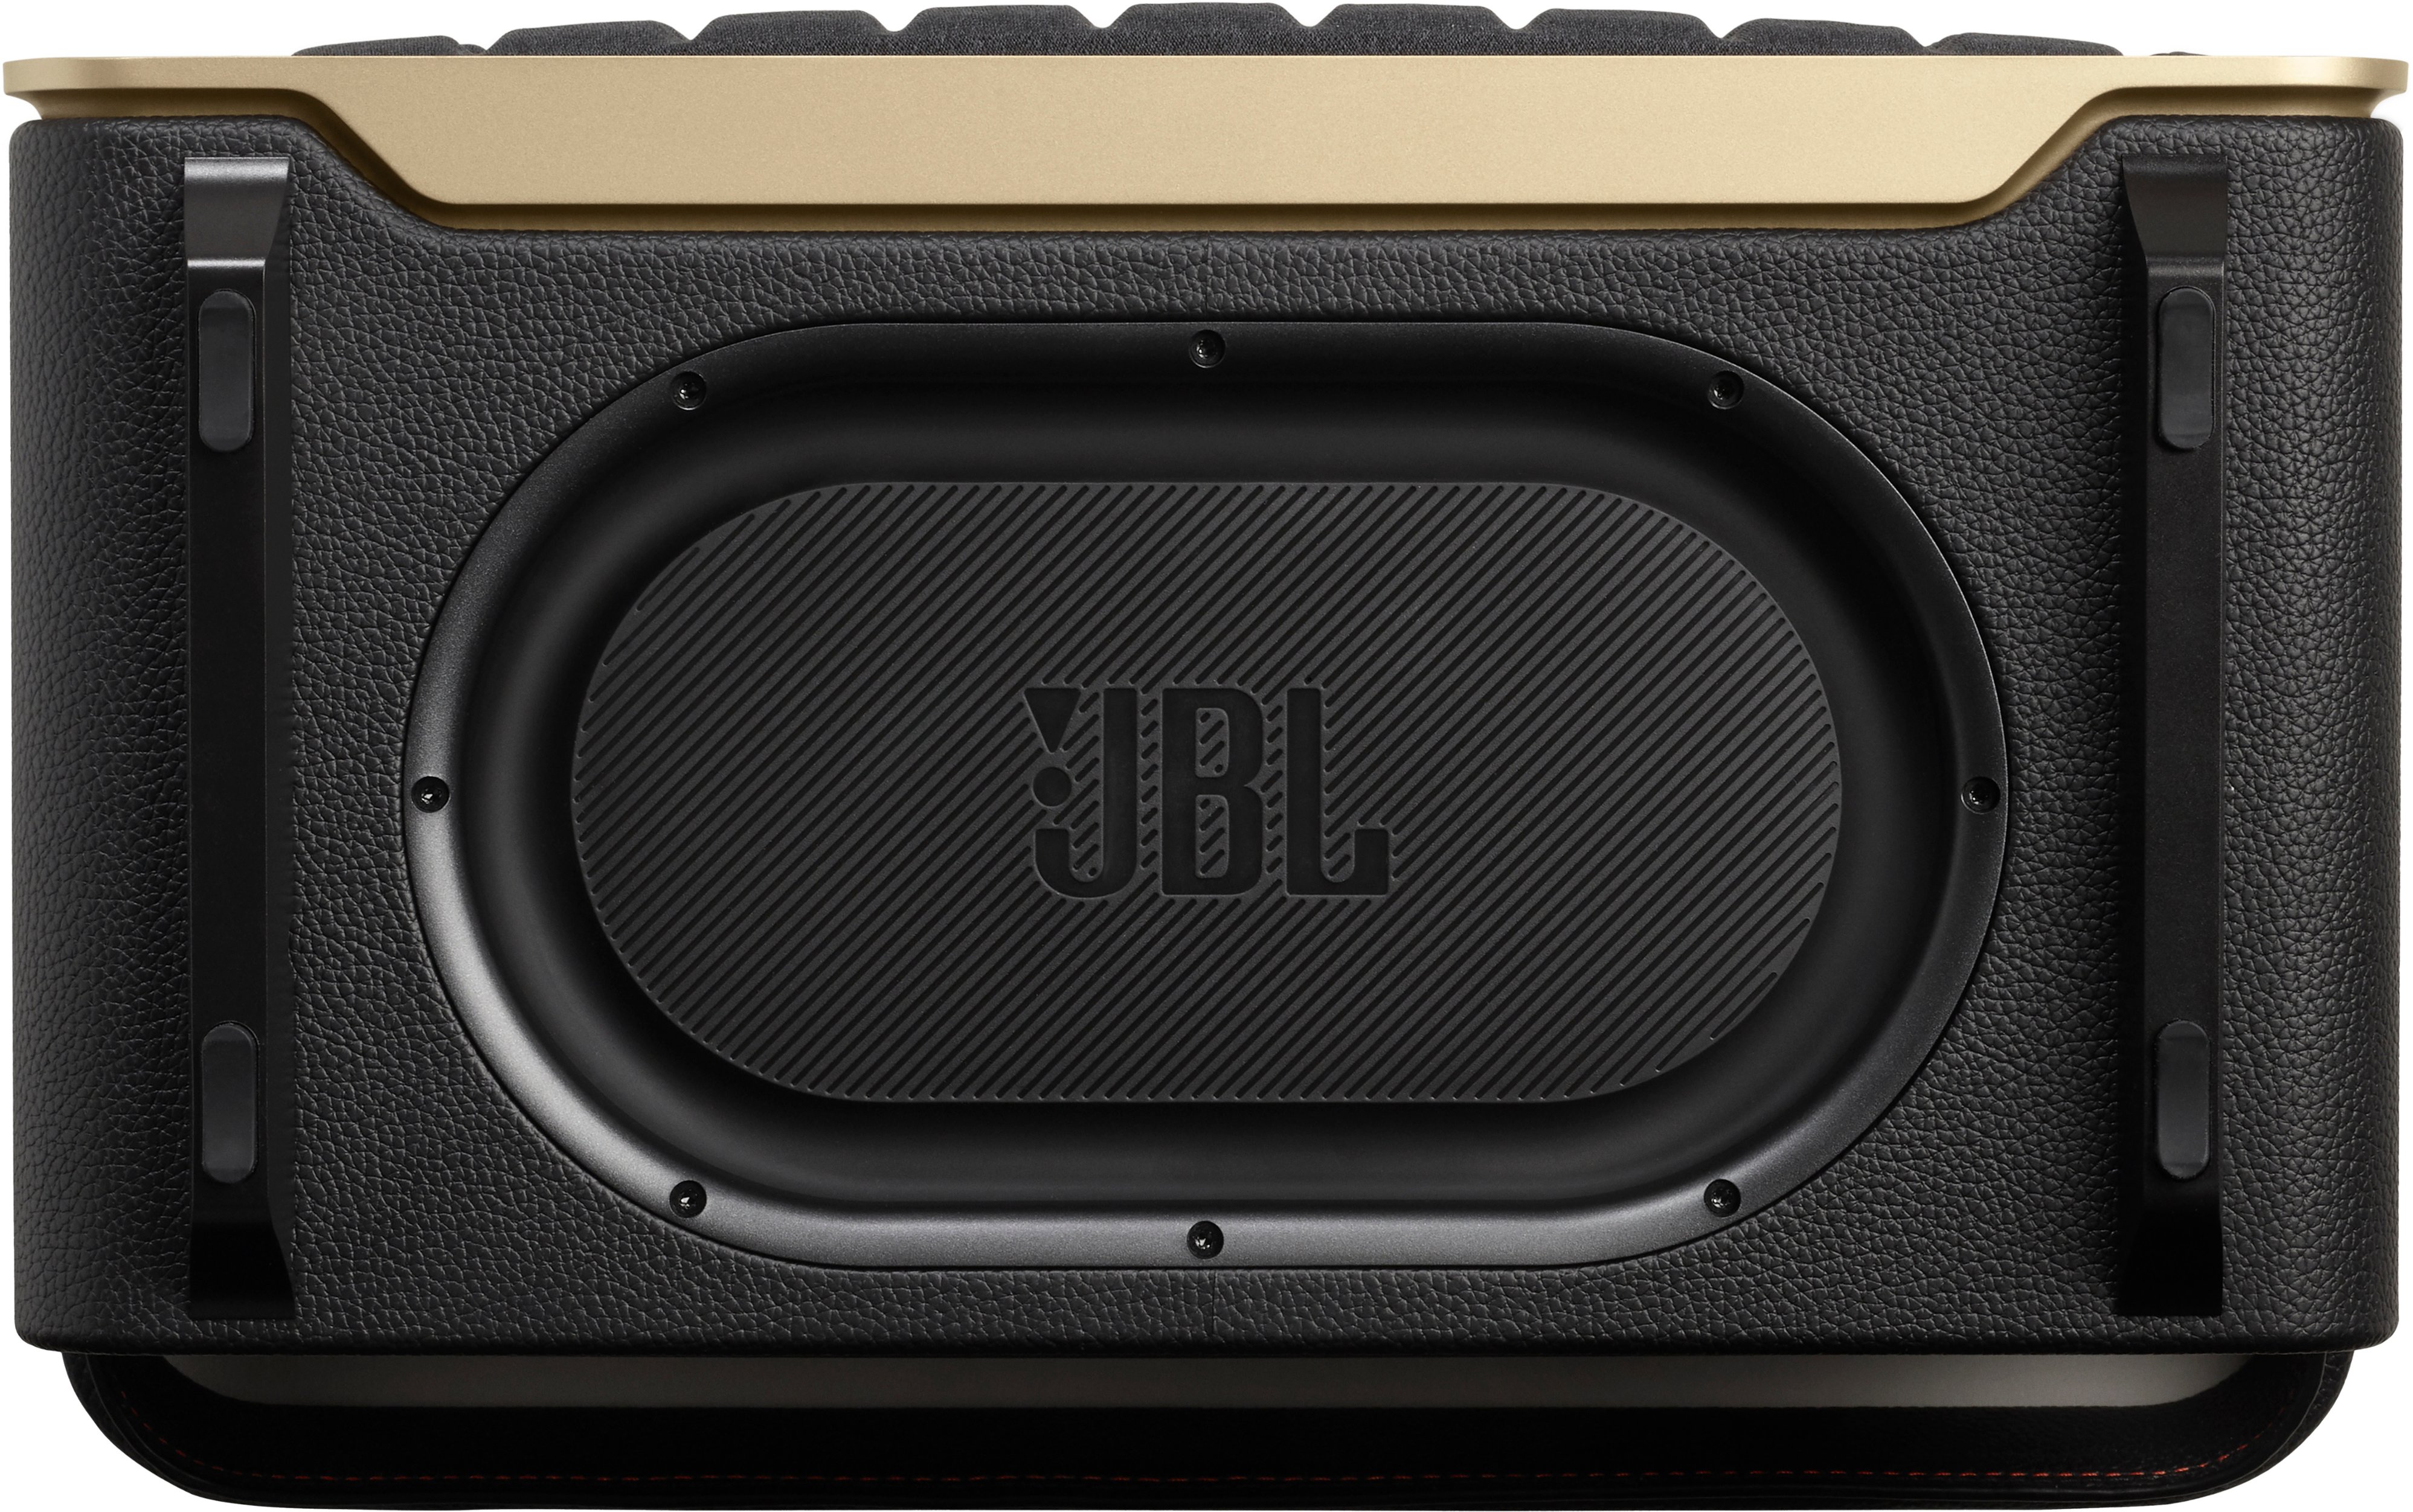 JBL Authentics 300 Smart Home Speaker Black JBLAUTH300BLKAM - Best Buy